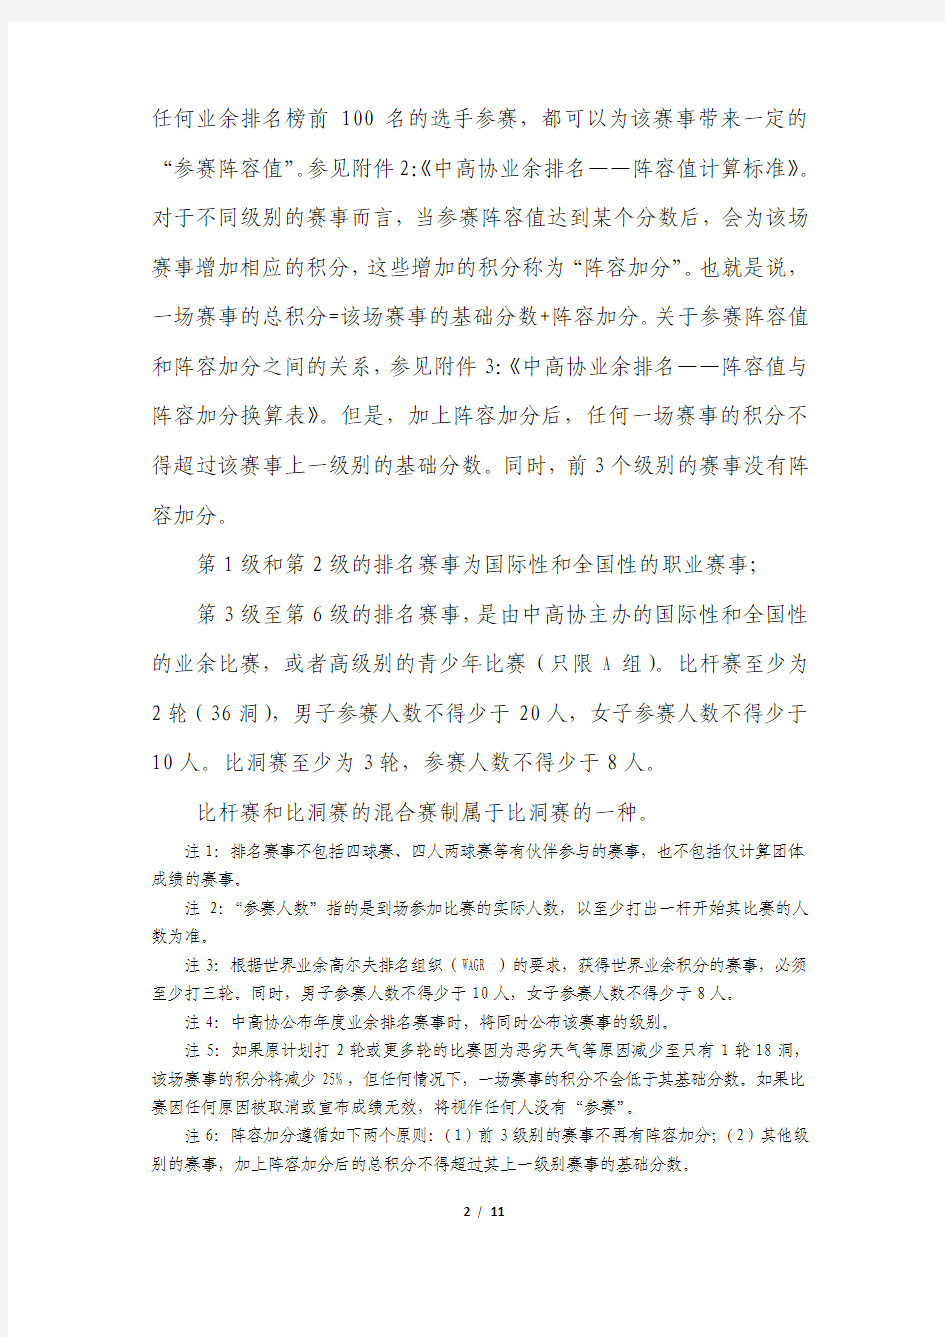 中国高尔夫球协会业余积分排名办法背景概述-中华全国体育总会